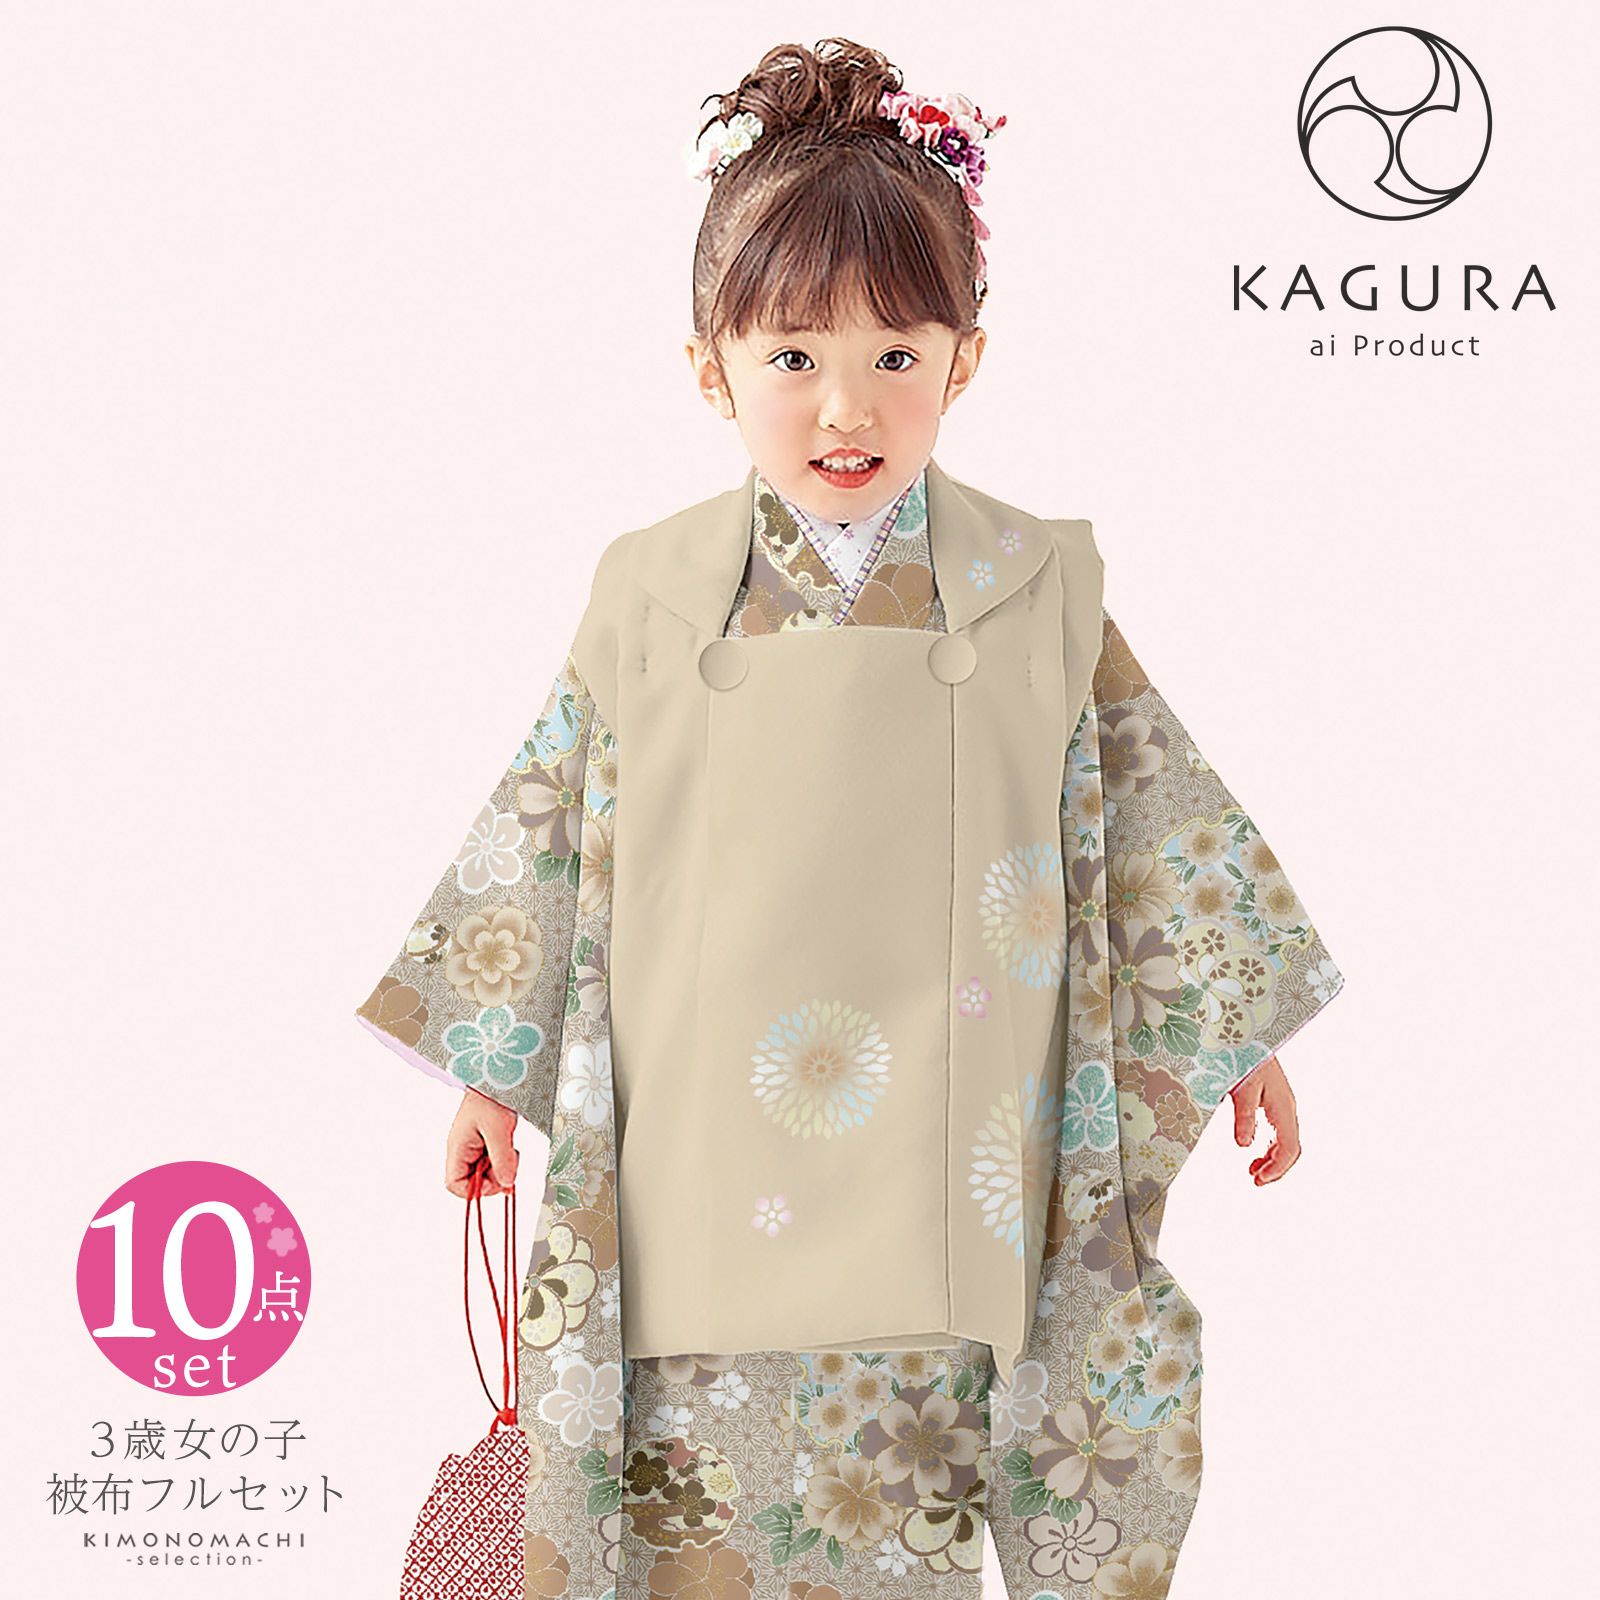 七五三 着物 3歳 女の子 ブランド被布セット KAGURA カグラ 「ベージュ 